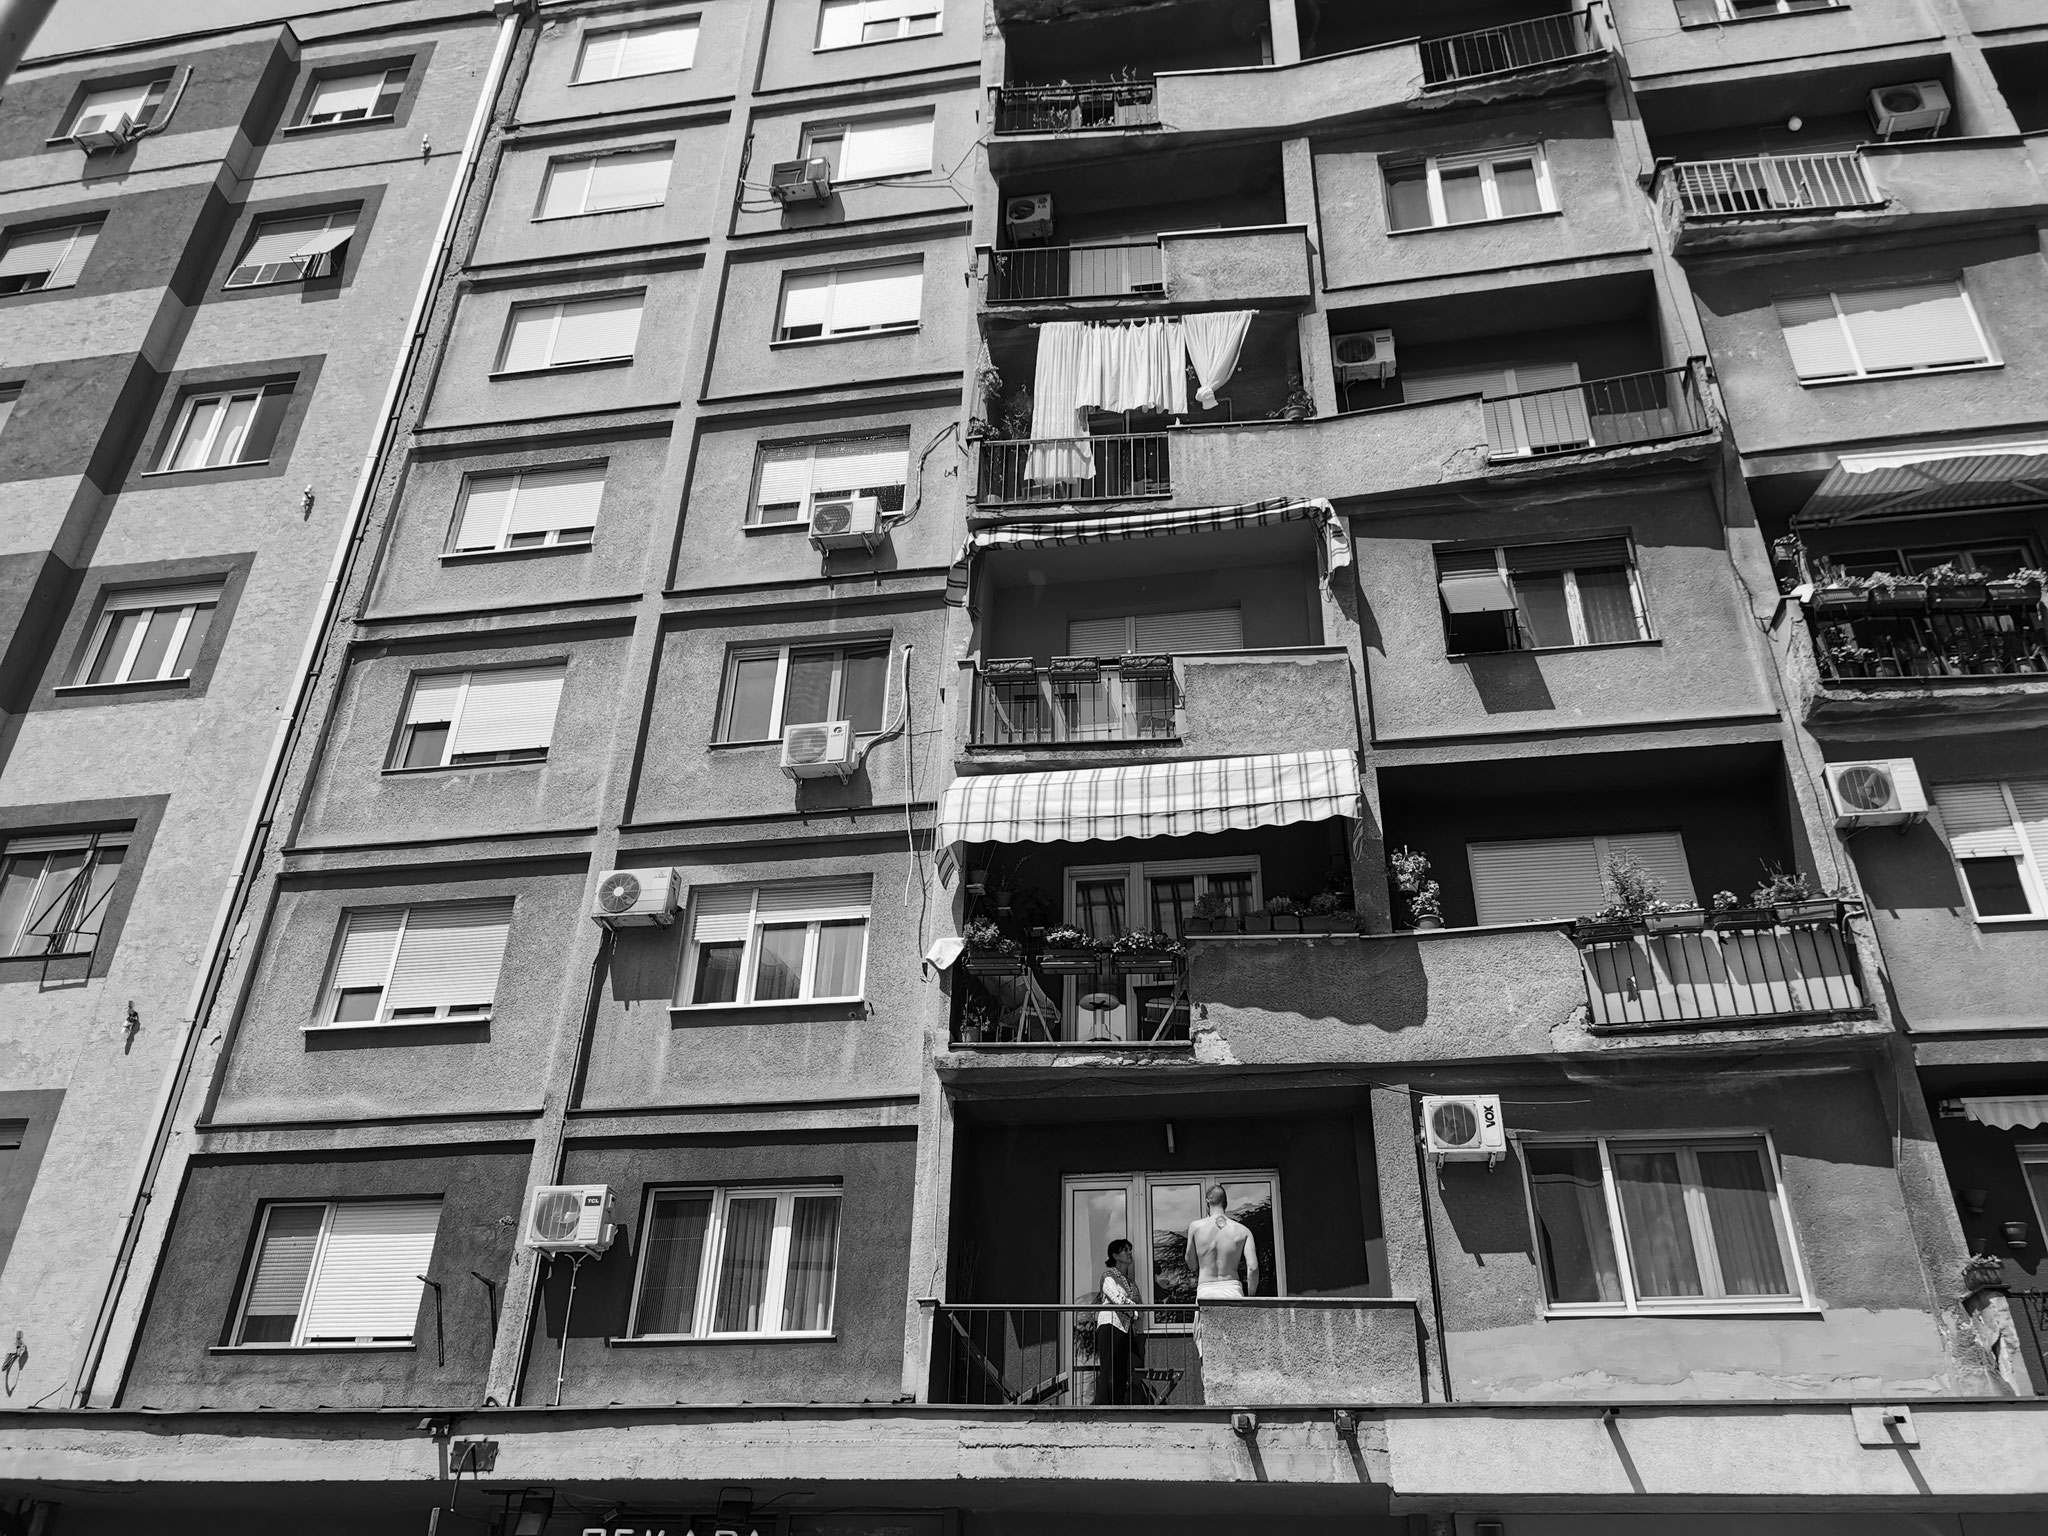 Häuserfront mit Balkonen, irgendwo unterwegs in Tschechien